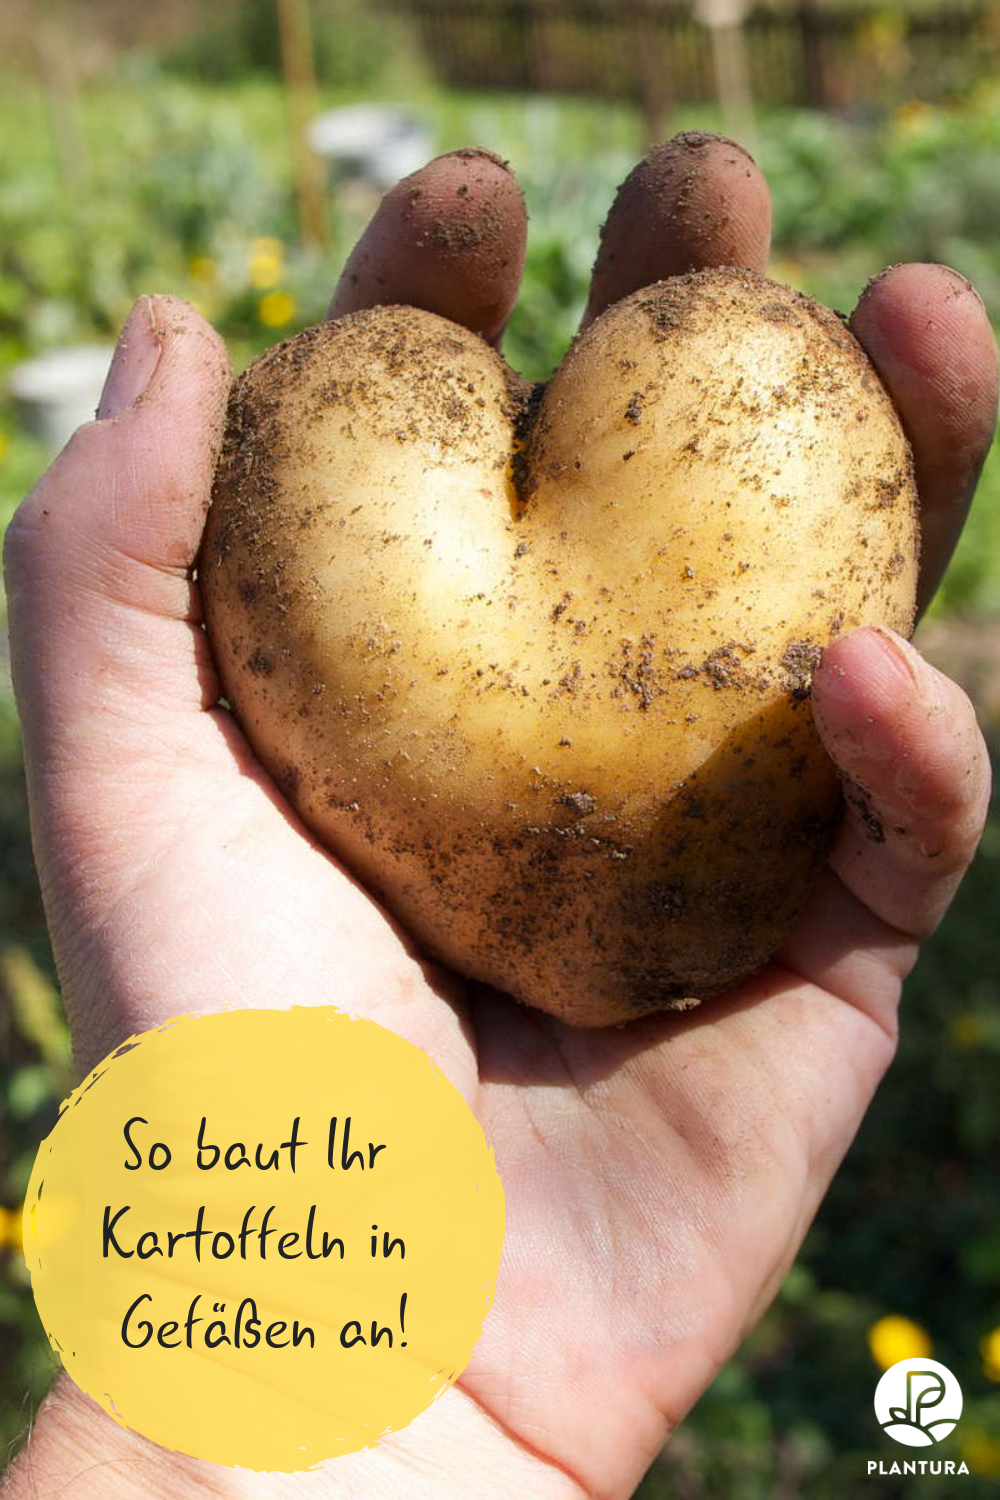 Kleinen Garten Neu Gestalten Frisch Kartoffelanbau Im Blumentopf Für Den Kleinen Garten Oder